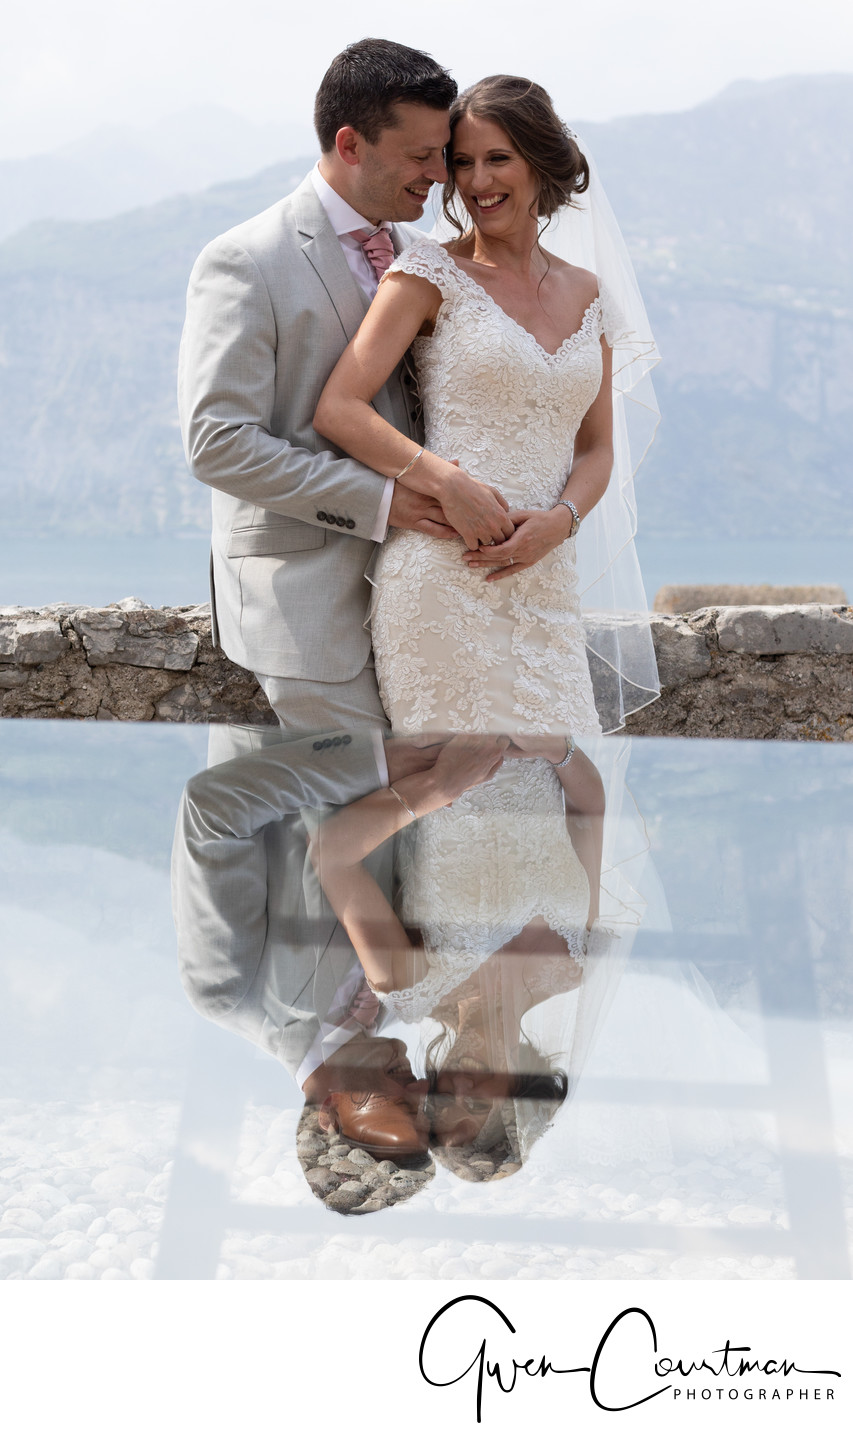 Fun, intimate moment photos, Lake Garda, Italy.